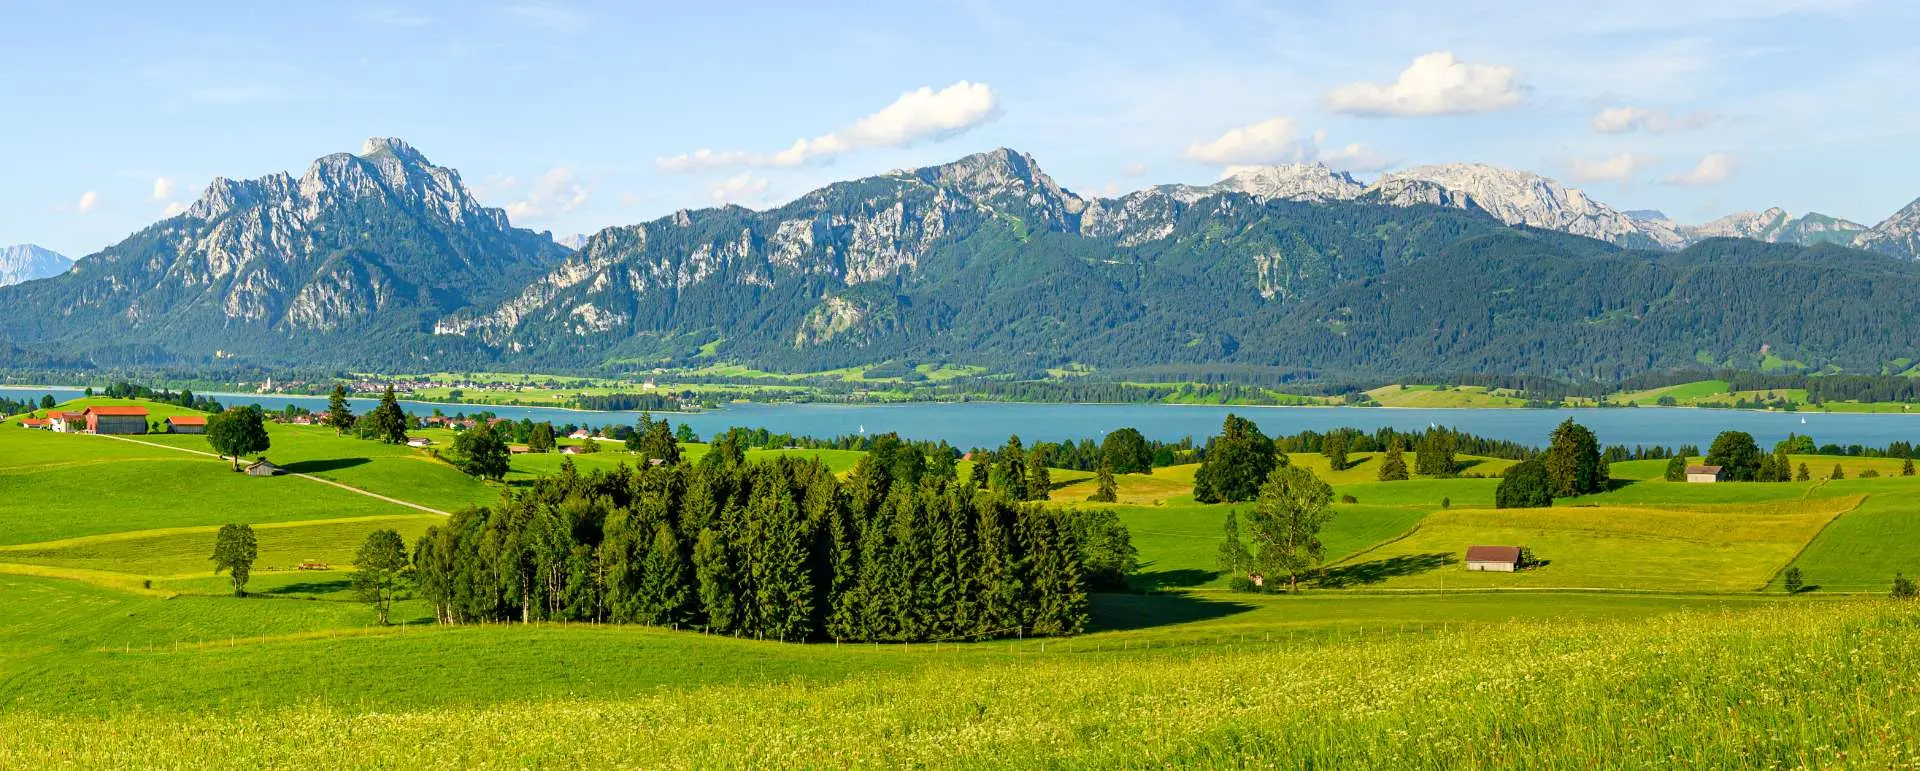 Allgäu - the destination for families